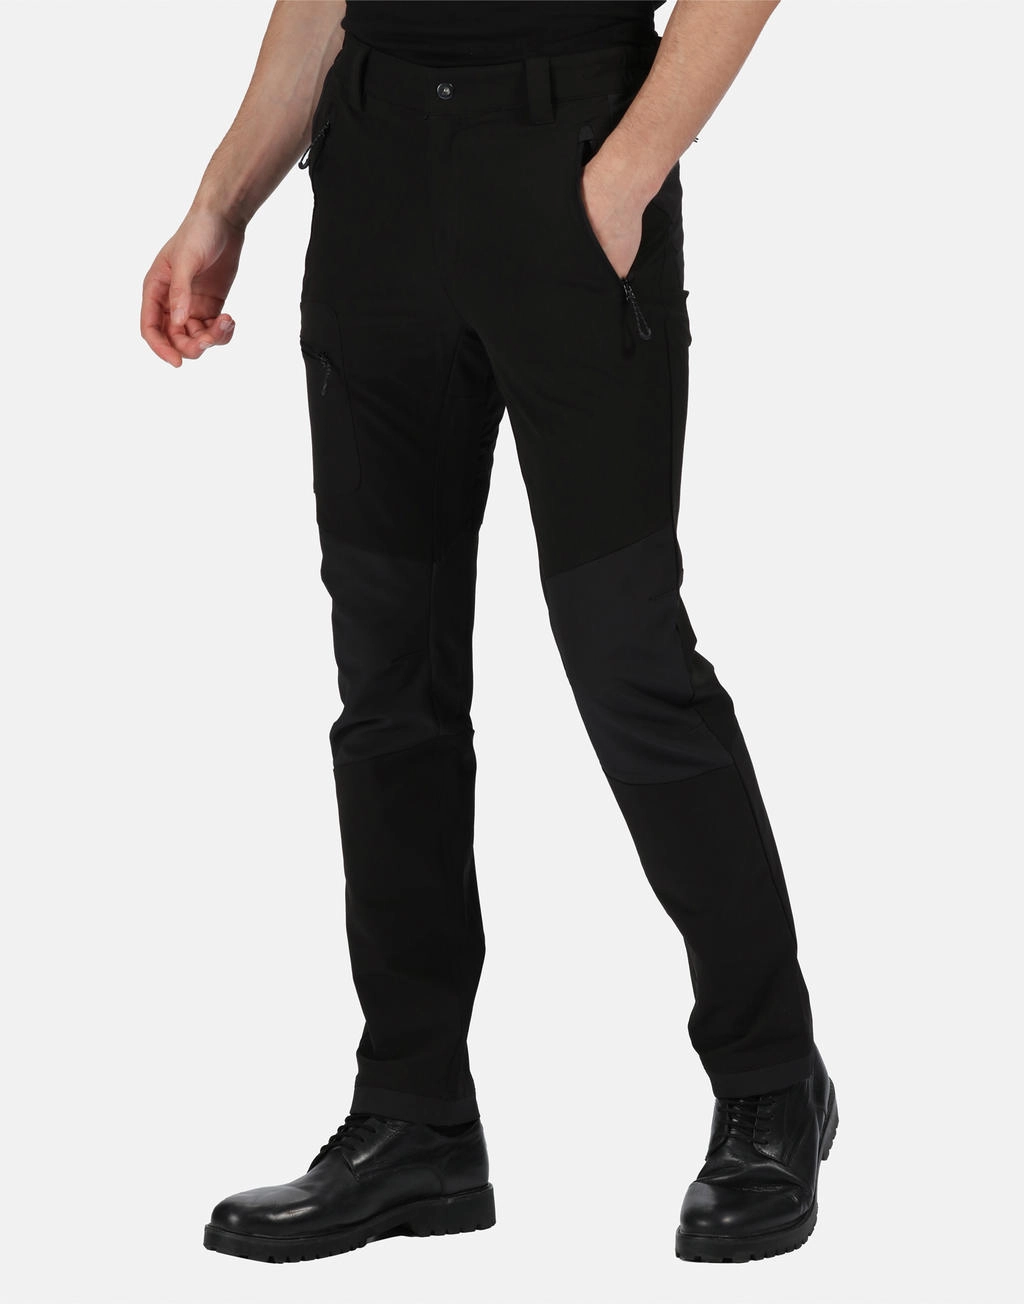 X-Pro Prolite Stretch Trouser (Short) zum Besticken und Bedrucken mit Ihren Logo, Schriftzug oder Motiv.